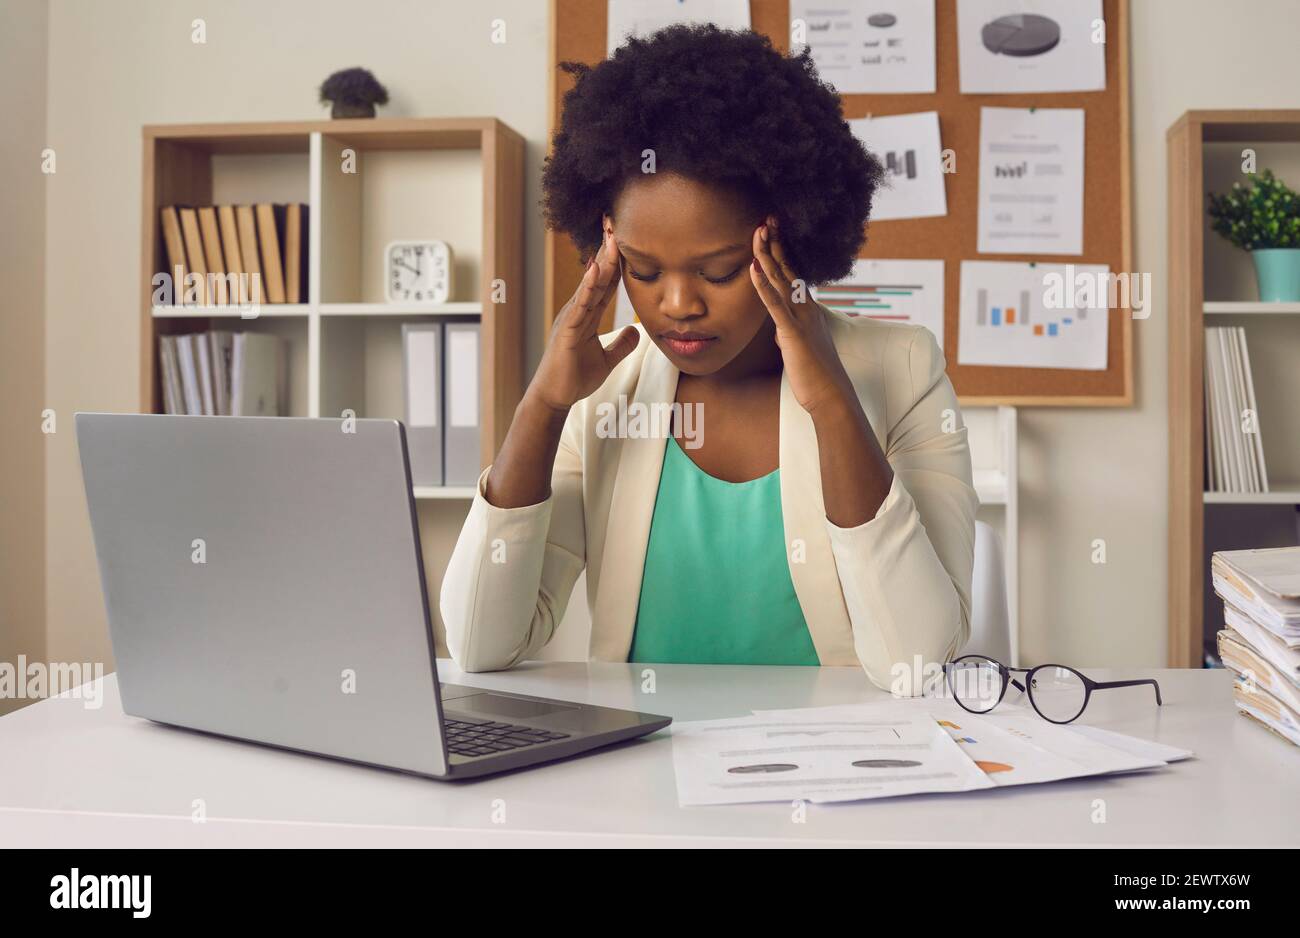 Femme millénaire afro-américaine surtravaillée qui ressent de forts maux de tête assis devant de l'ordinateur portable Banque D'Images